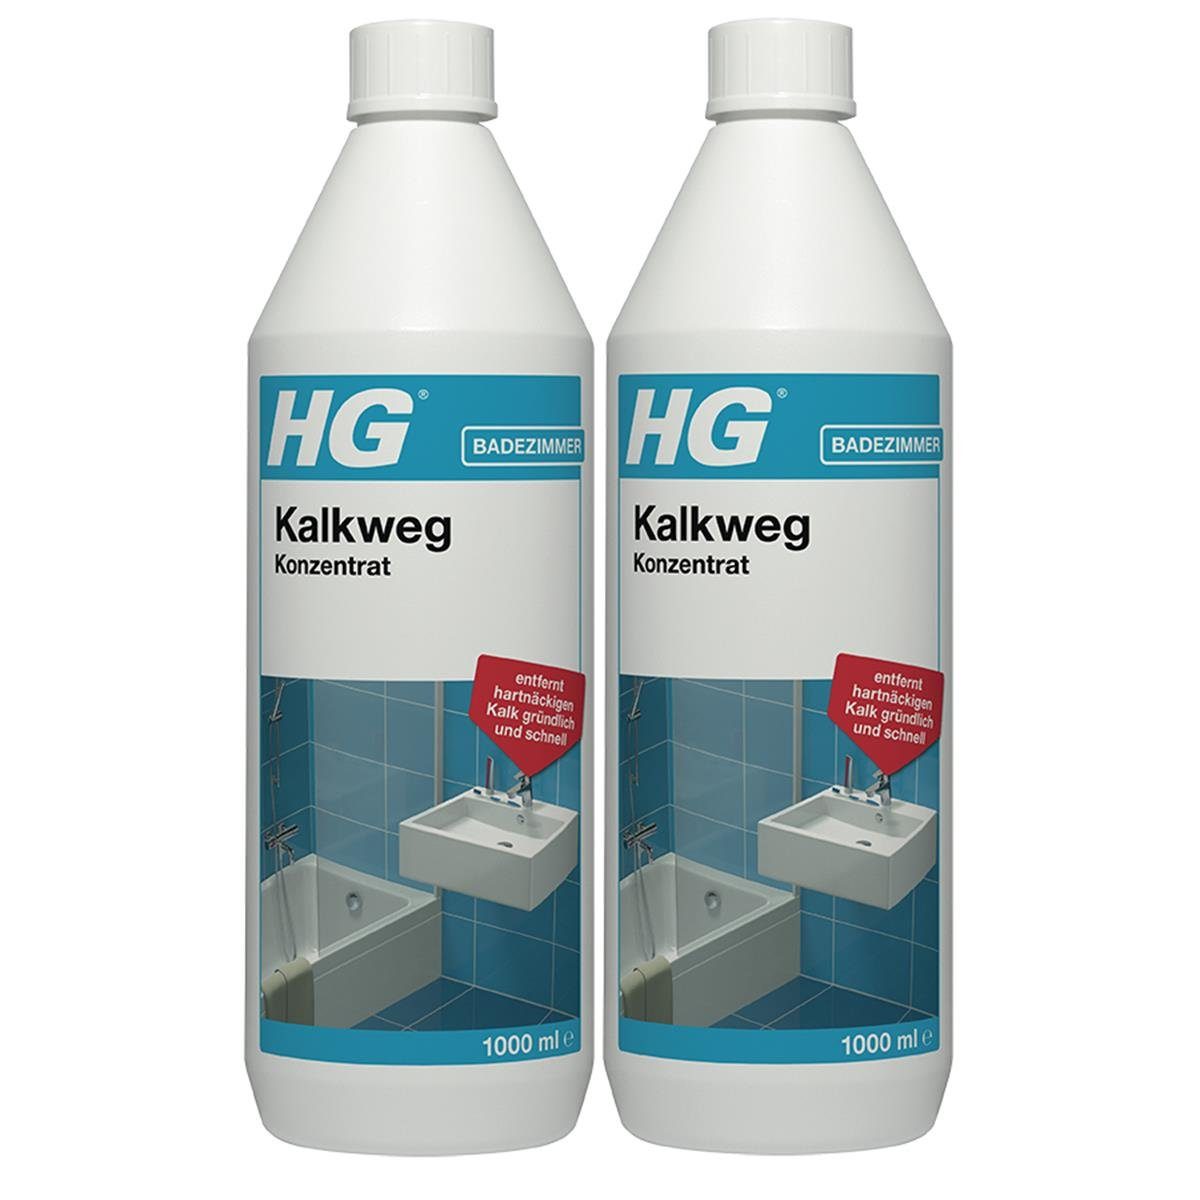 HG HG Kalkweg Konzentrat 1L - Entfernt auch Rostflecken & Urinstein (2er Badreiniger